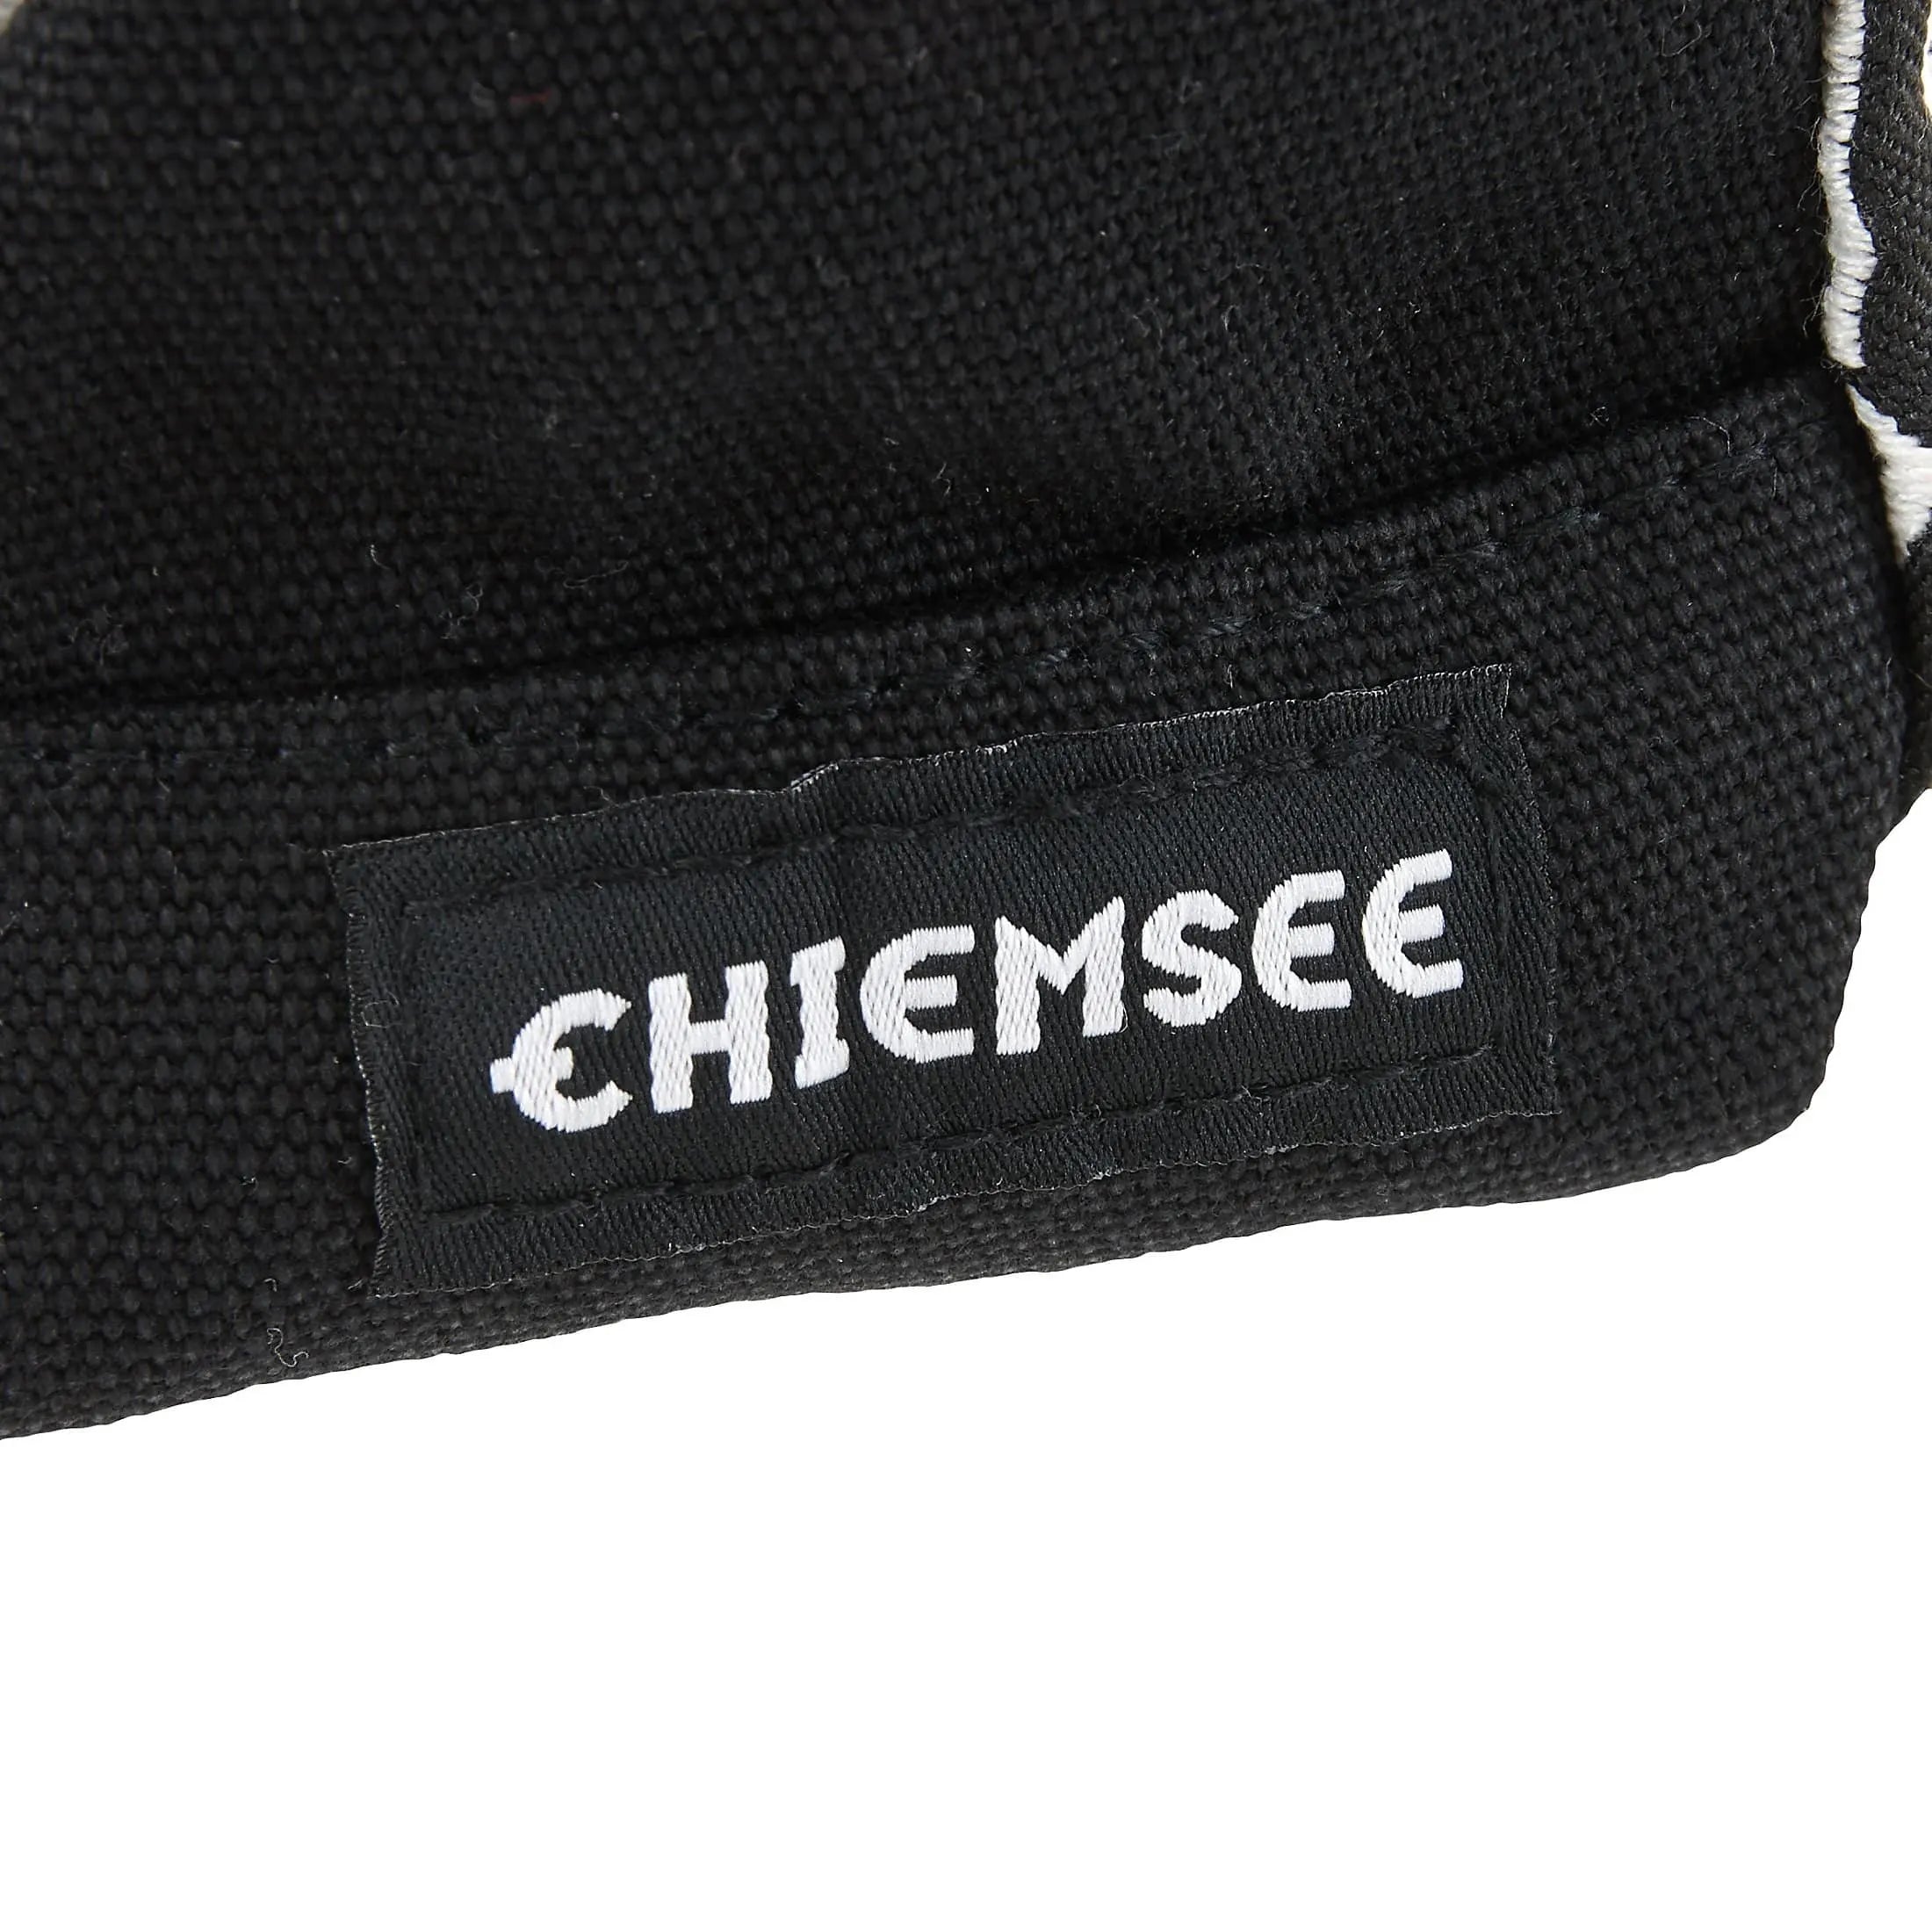 Chiemsee Sacs de sport et de voyage Sac noir et blanc 23 cm - noir profond